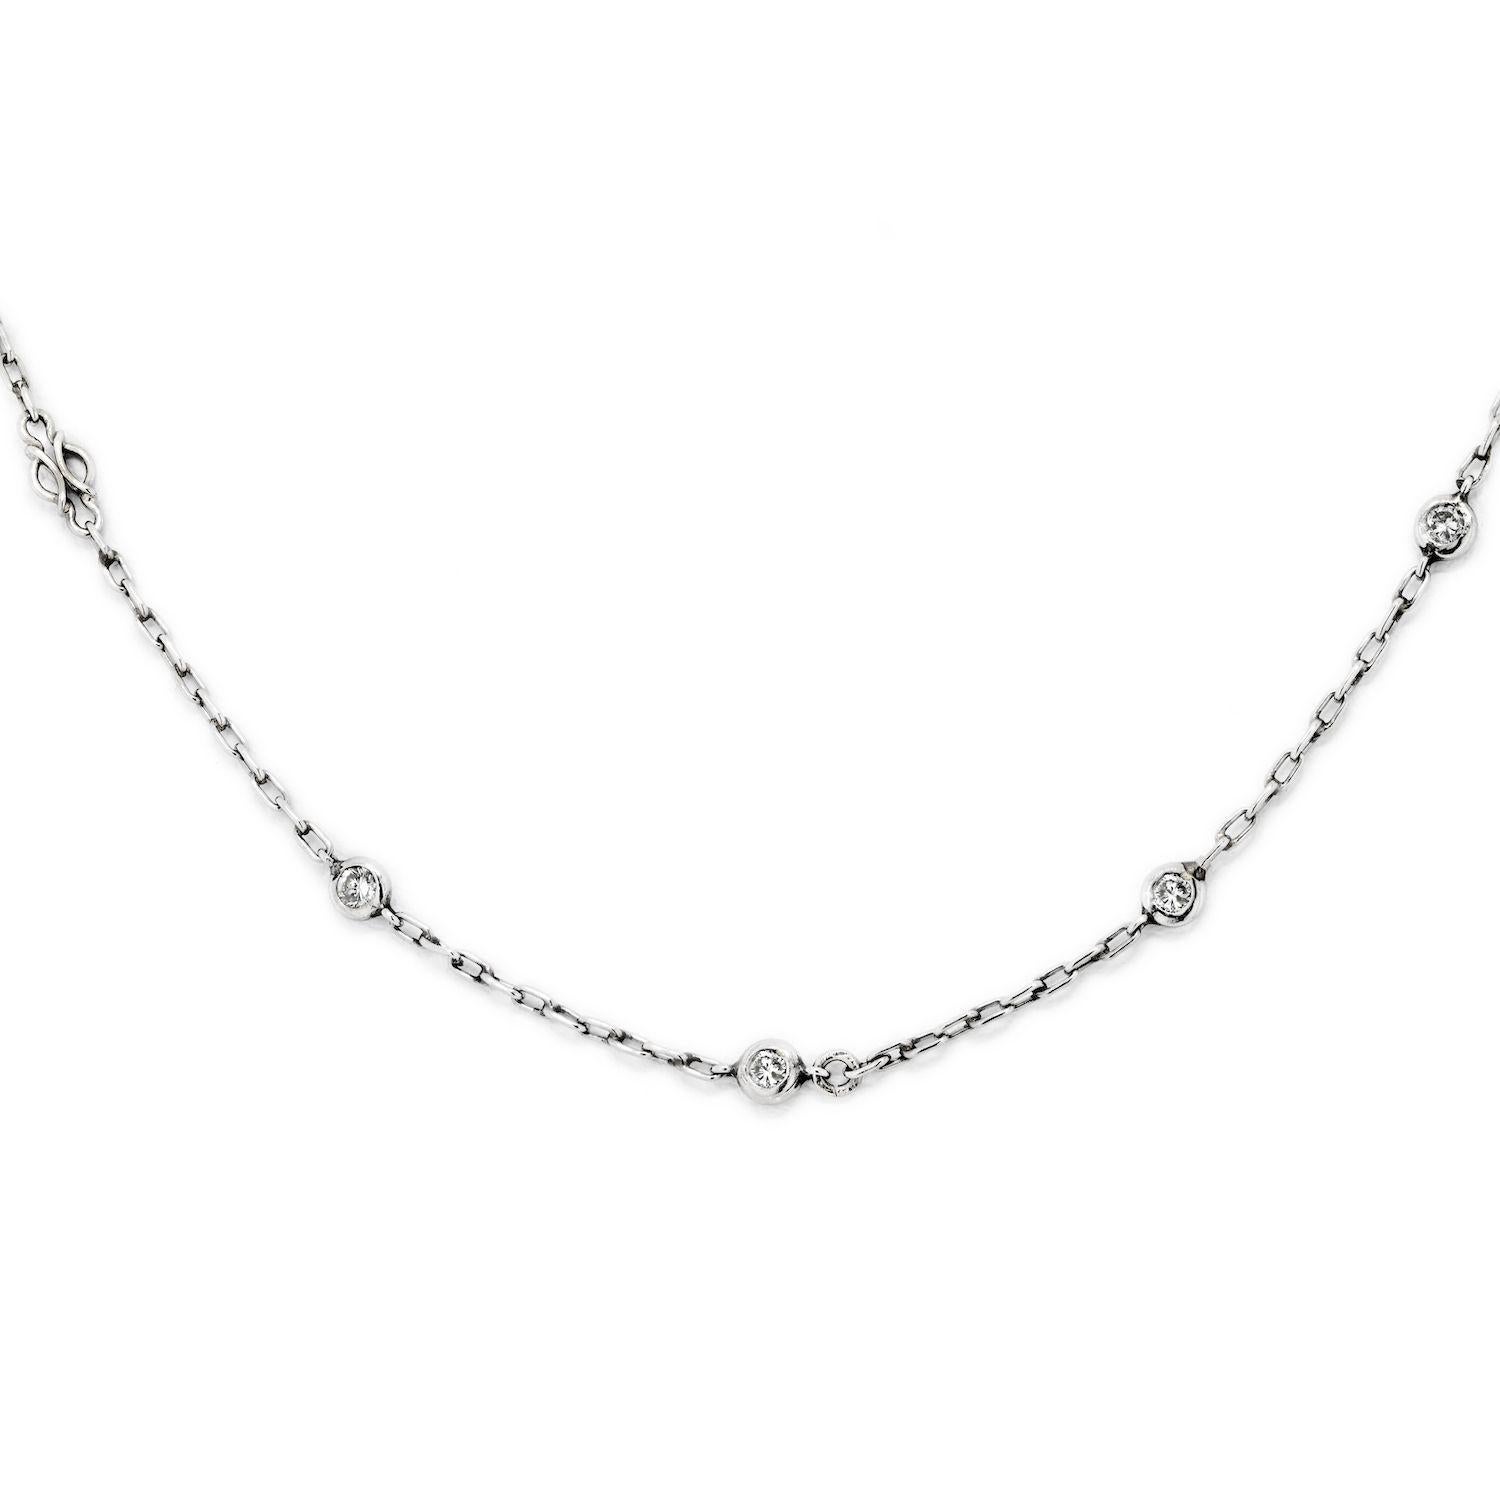 Le collier vintage en chaîne de platine qui comporte 10 diamants ronds d'un poids total en carats de 0,50cttw est un bijou délicat. La chaîne est fabriquée en platine de haute qualité, connu pour sa durabilité et son éclat, et est conçue pour se